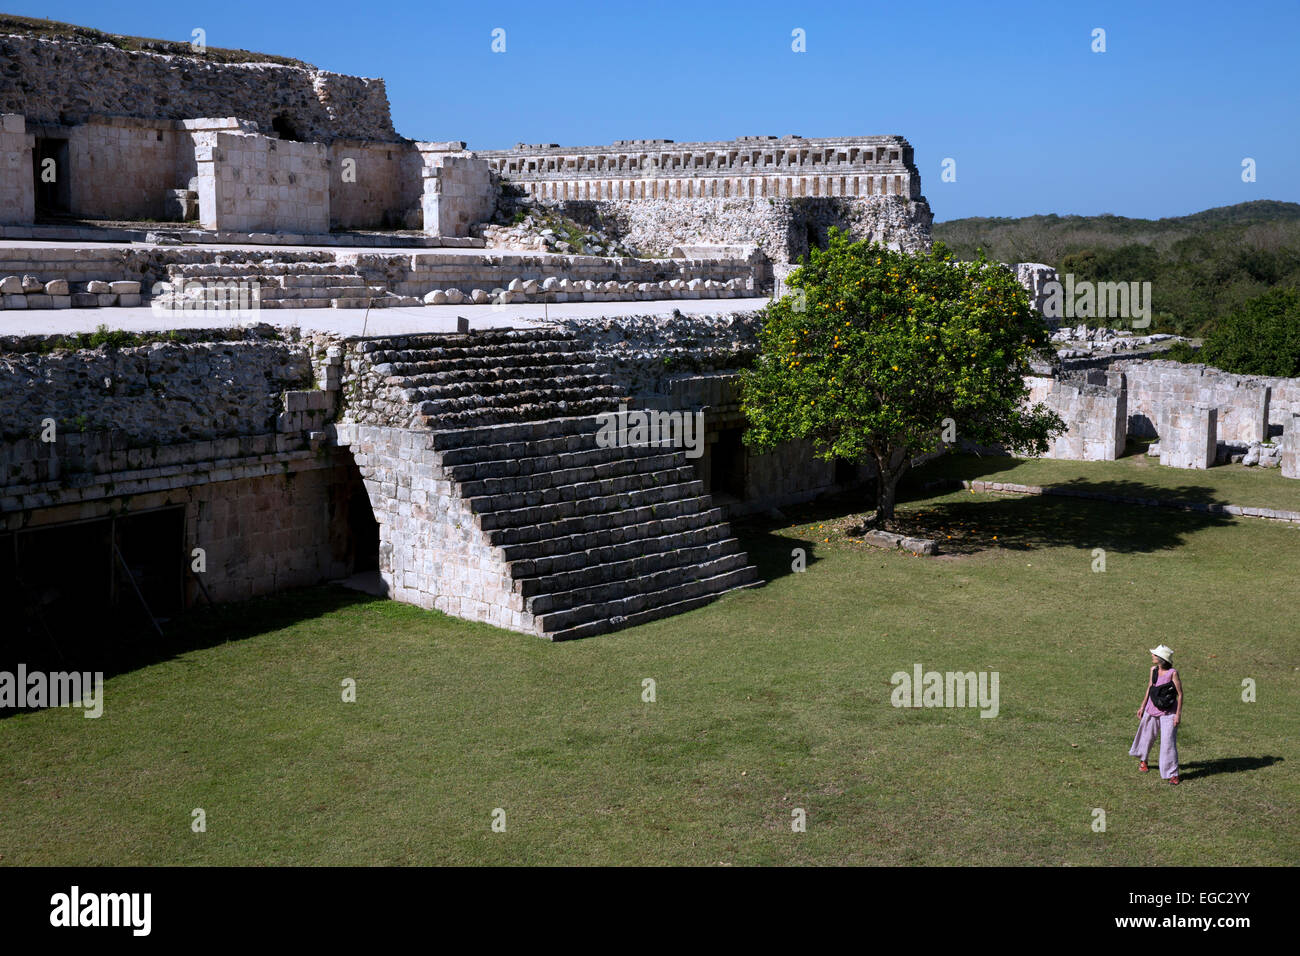 Mayan ruins at Kabah, Yucatan, Mexico Stock Photo